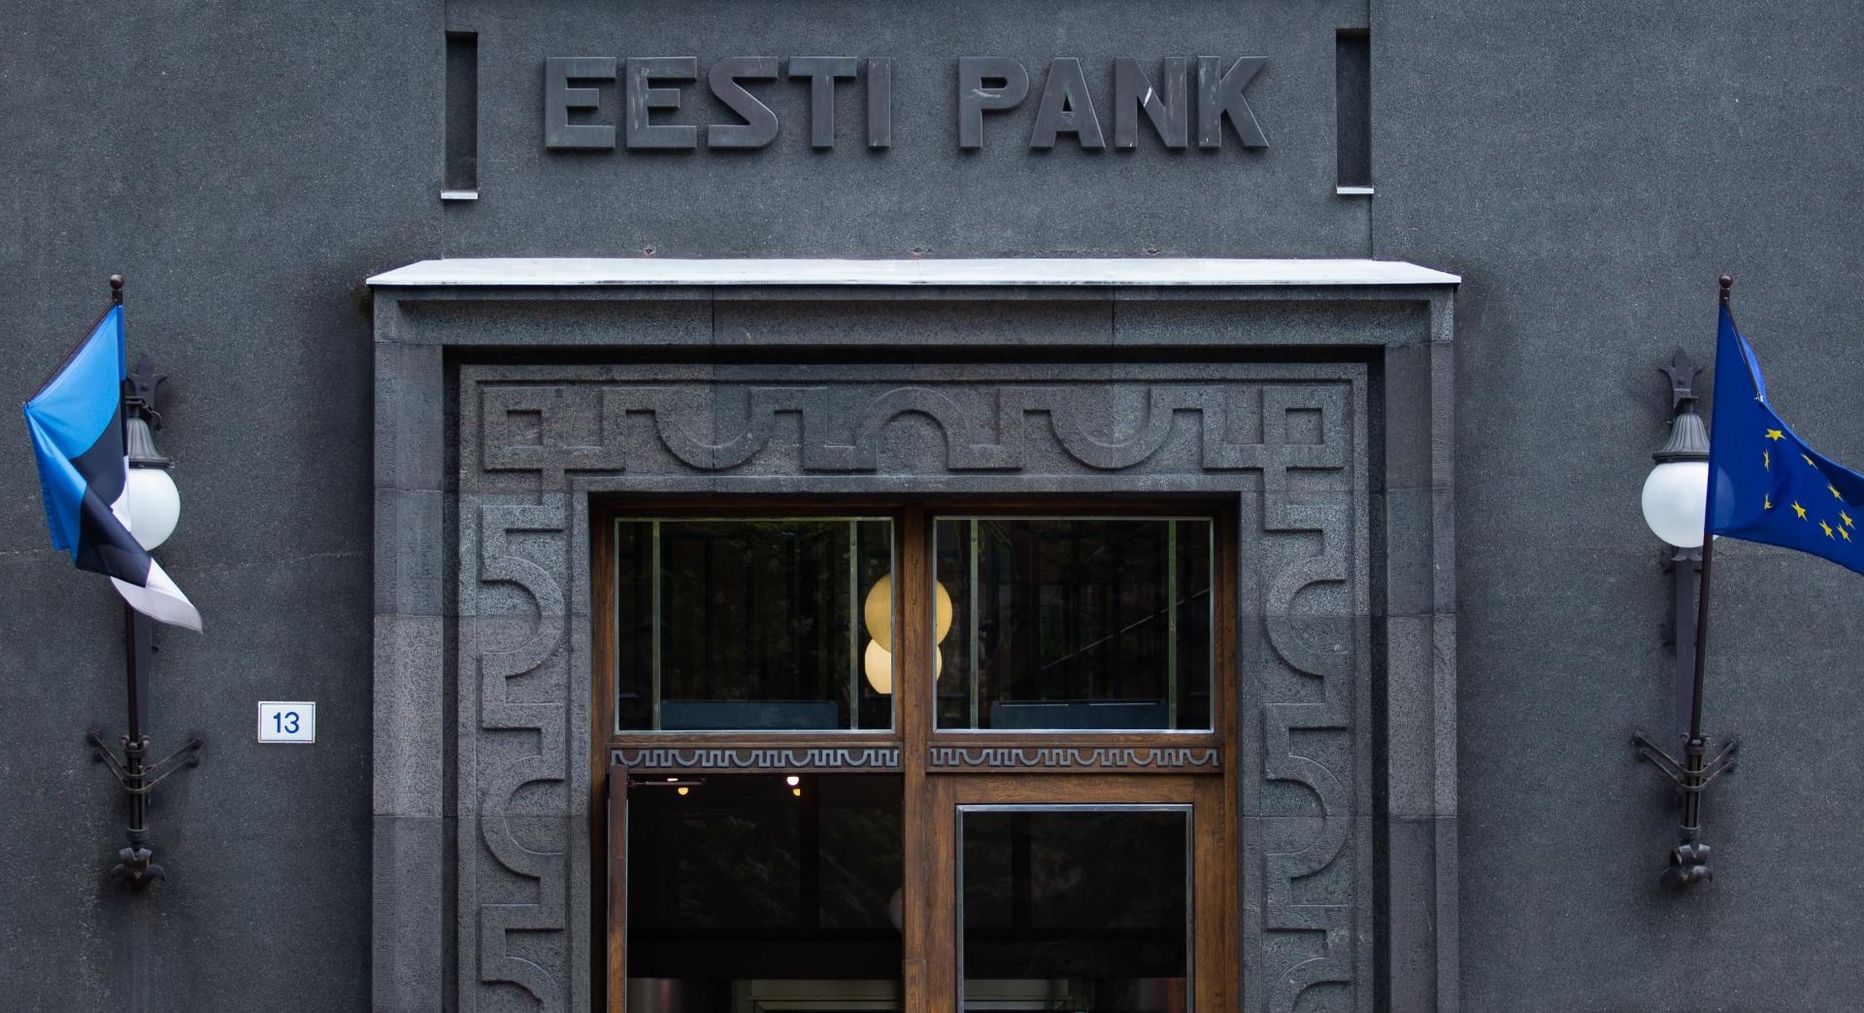 Eesti Pank.